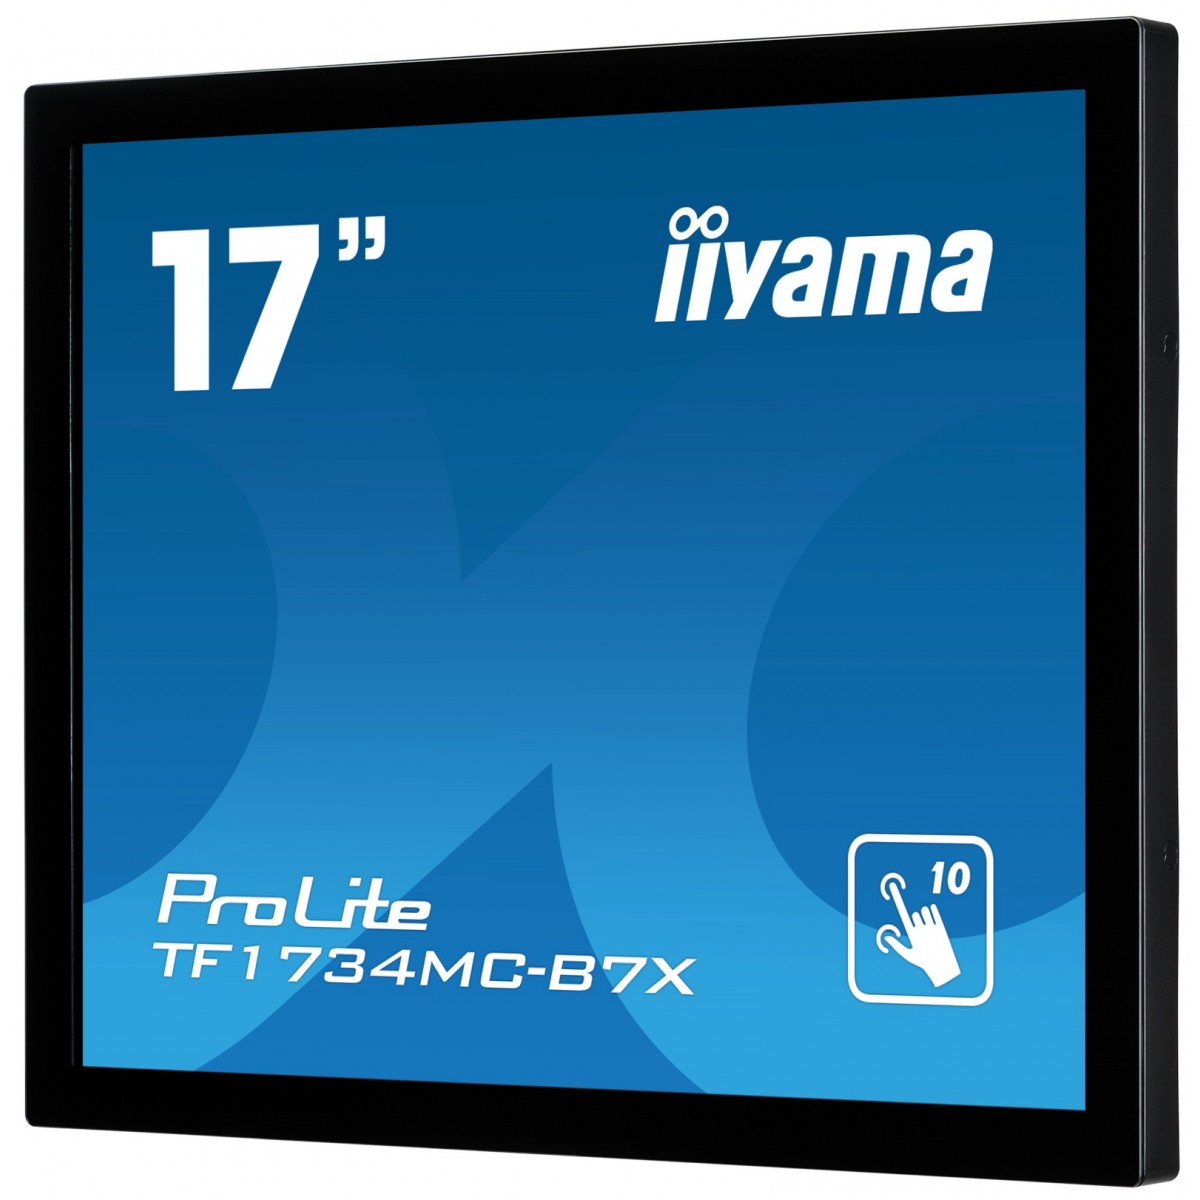 Iiyama ProLite TF1734MC-B7X - 43.2 cm (17) - 350 cd/m² - SXGA - LED - 5:4 - 1280 x 1024 pixels